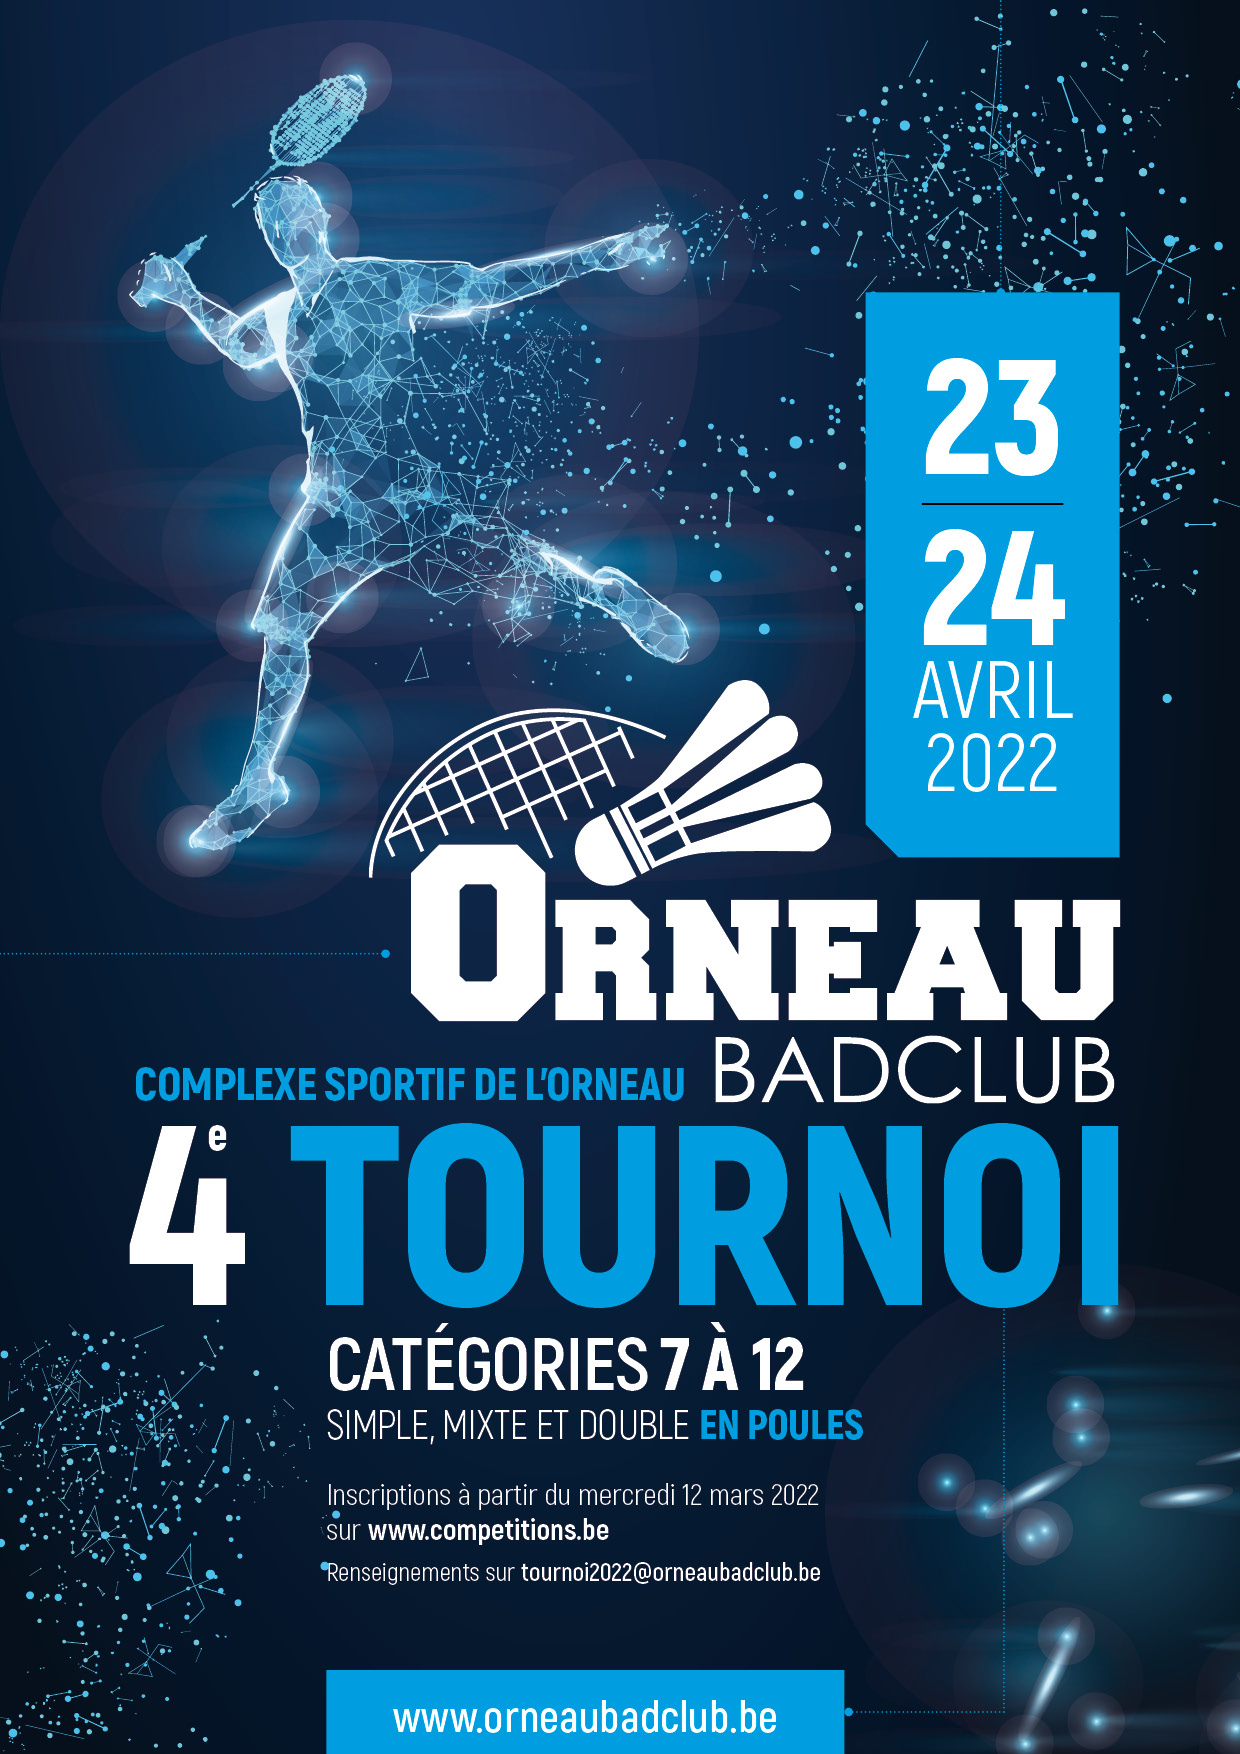 Tournoi badminton OBC 2022